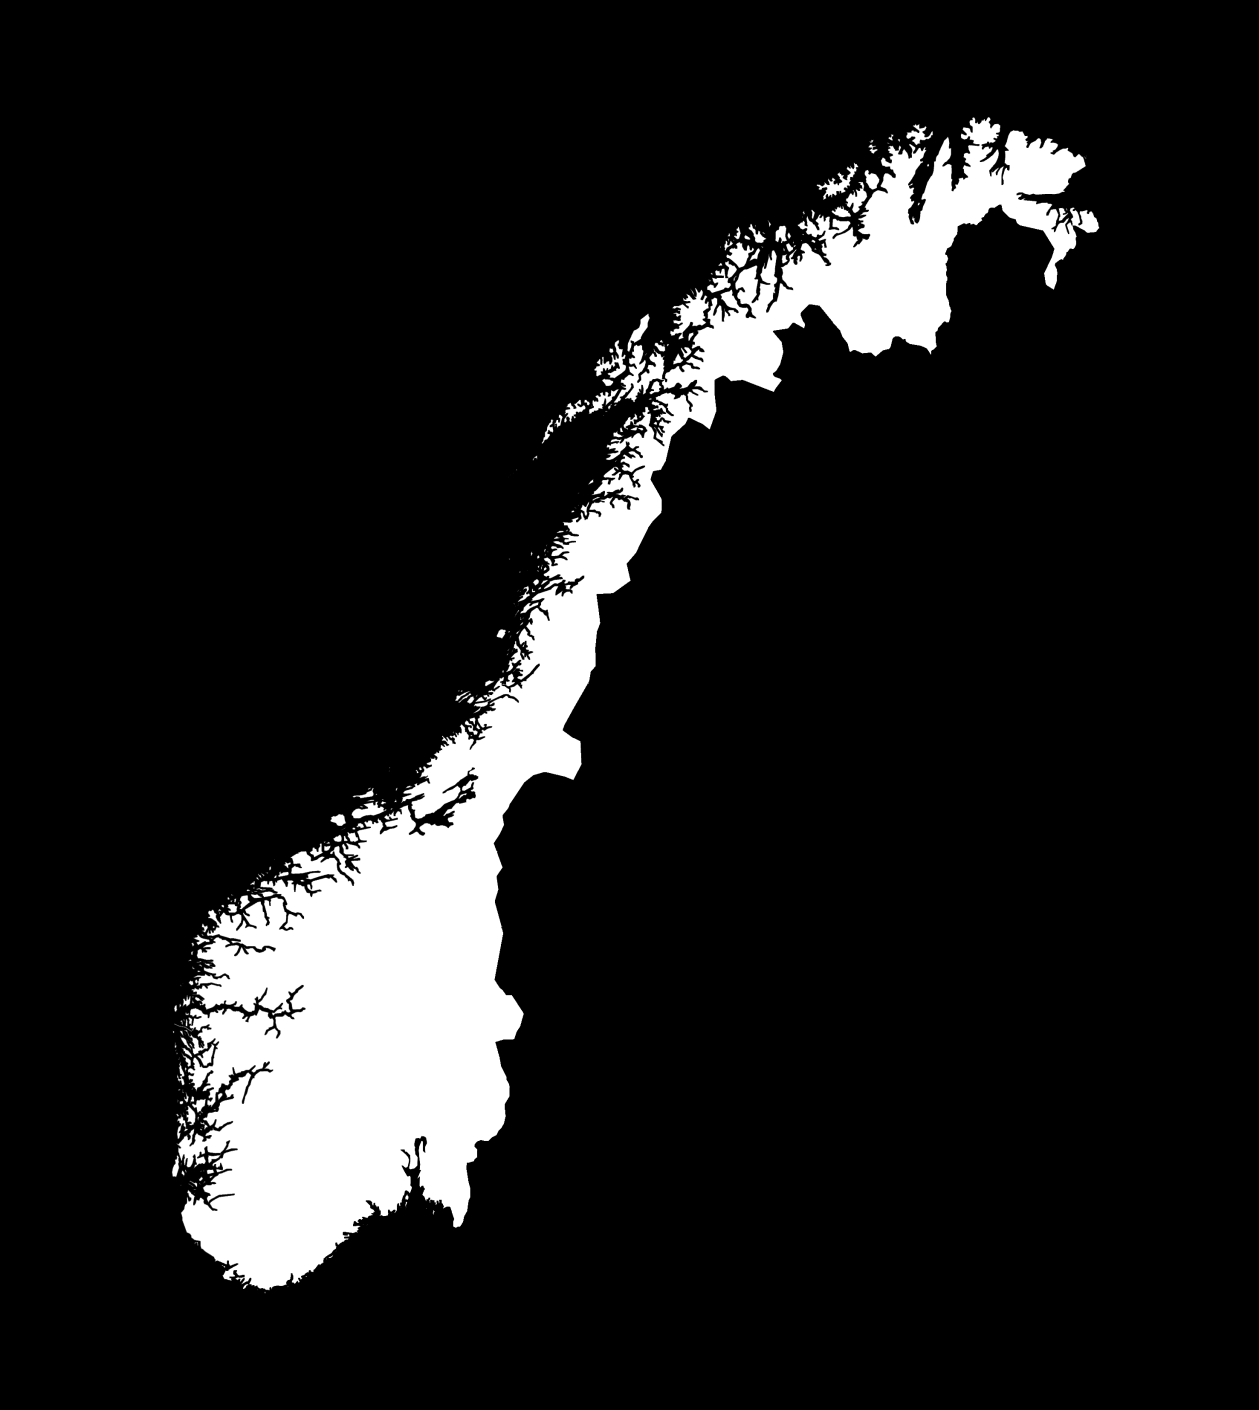 Kommende OPS-prosjekter E10/rv 85 Tjeldsund Gullesfjordbotn Langvassbukt 81 km NOK 2,8 milliarder Rv 3/rv 25 Ommangsvollen Grundset/ Basthjørnet 16,5 km (9,5 km 4-felts motorveg) NOK 4,1 milliarder